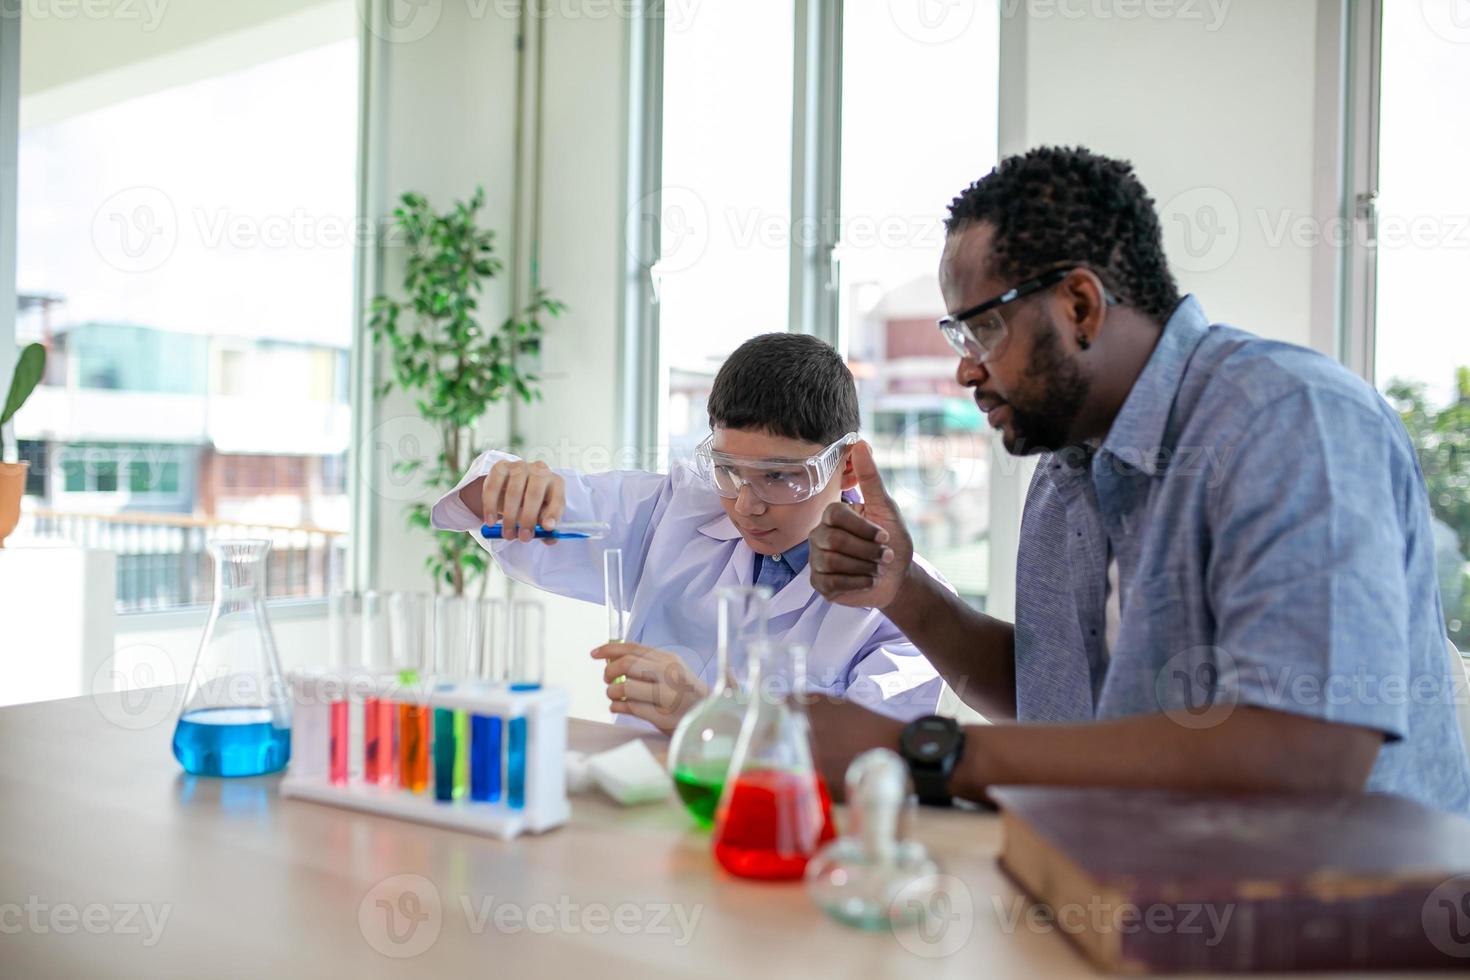 Studenten mischen Chemikalien in Bechergläsern. begeisterter lehrer erklärt kindern chemie, chemiestudent zeigt dem naturwissenschaftsunterricht ein neues experiment foto